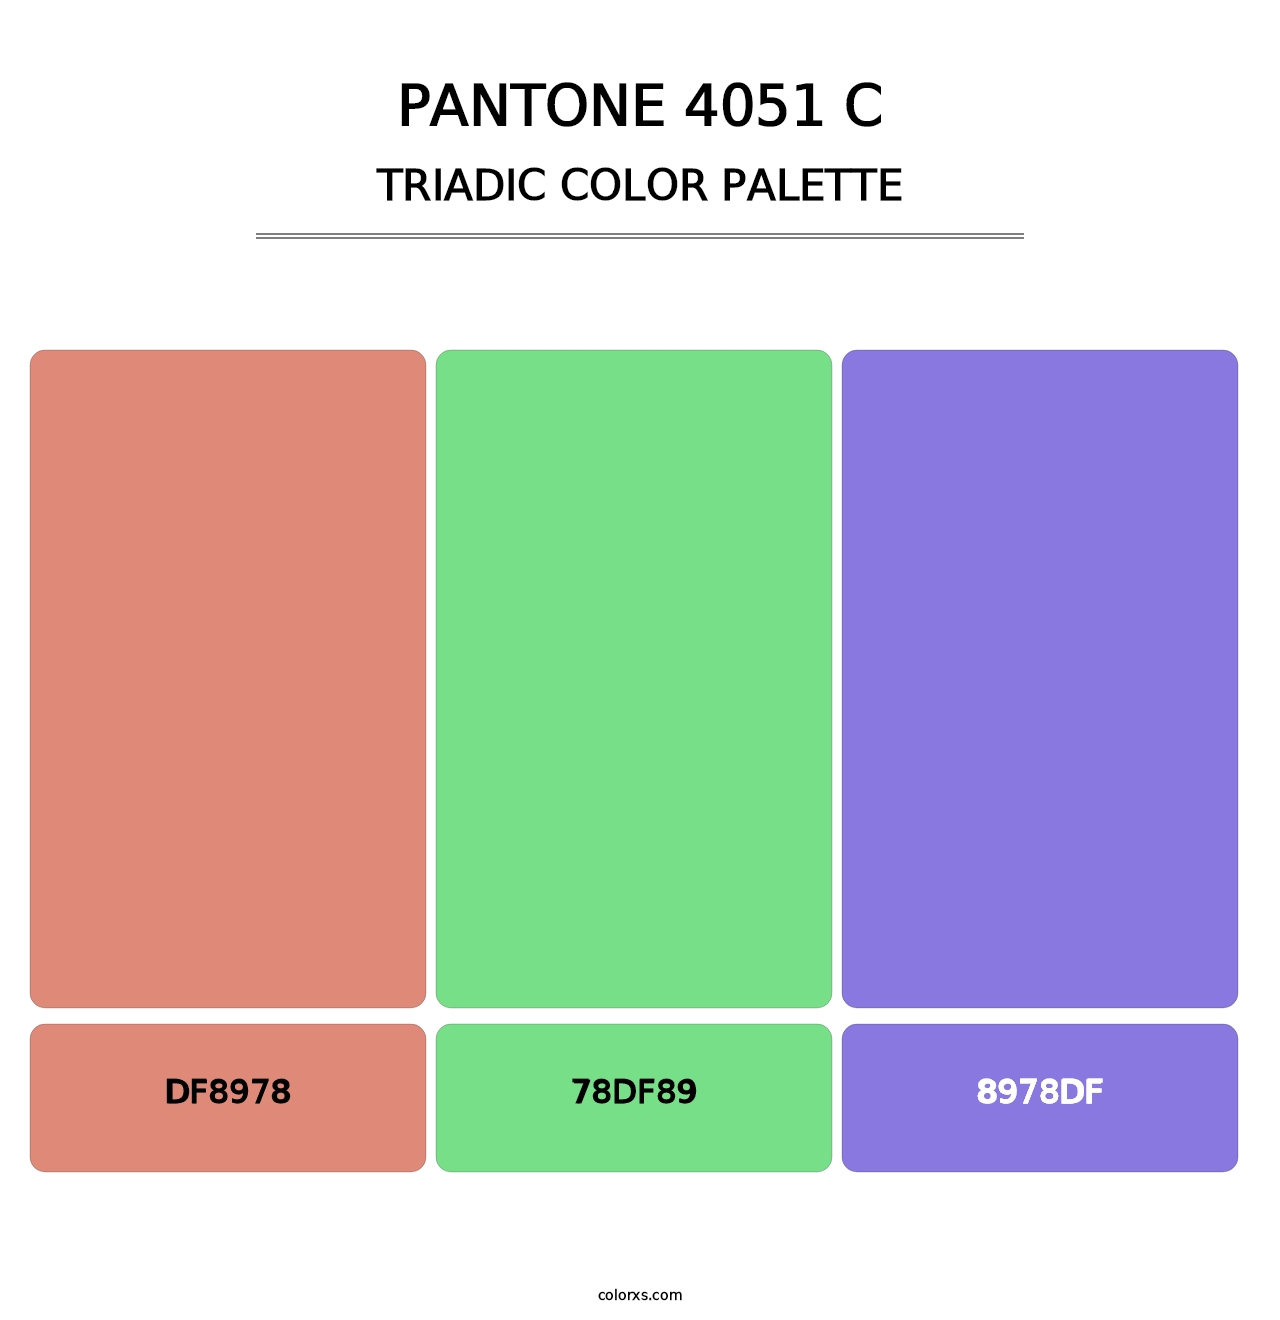 PANTONE 4051 C - Triadic Color Palette